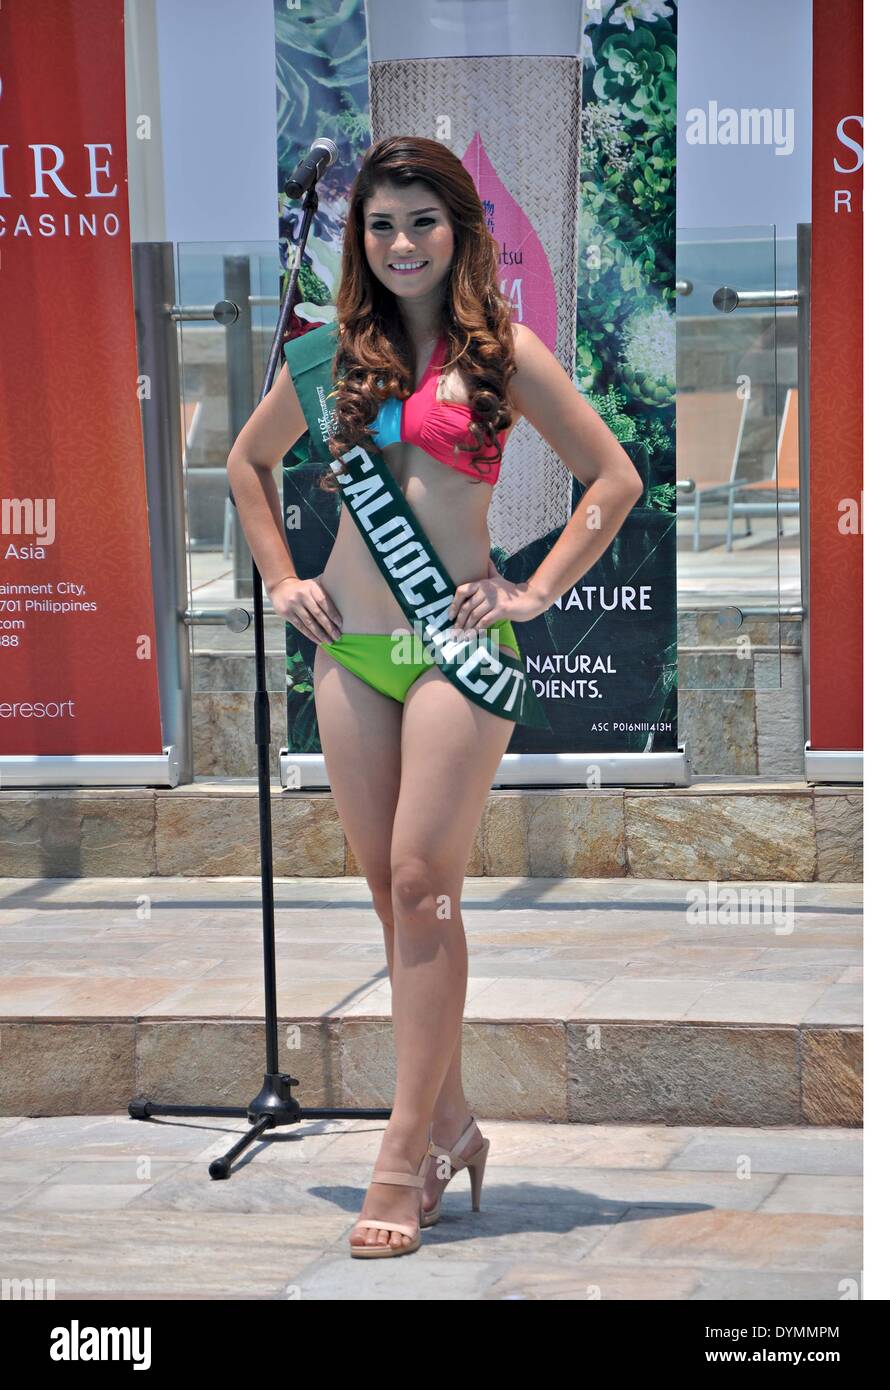 Manille, Philippines, le 22 avril : les futurs candidats à l'élection de  Miss Terre 2014 Philippines le mardi de la piscine d'un hôtel lors d'une  conférence de presse. Quelques 49 candidats seront